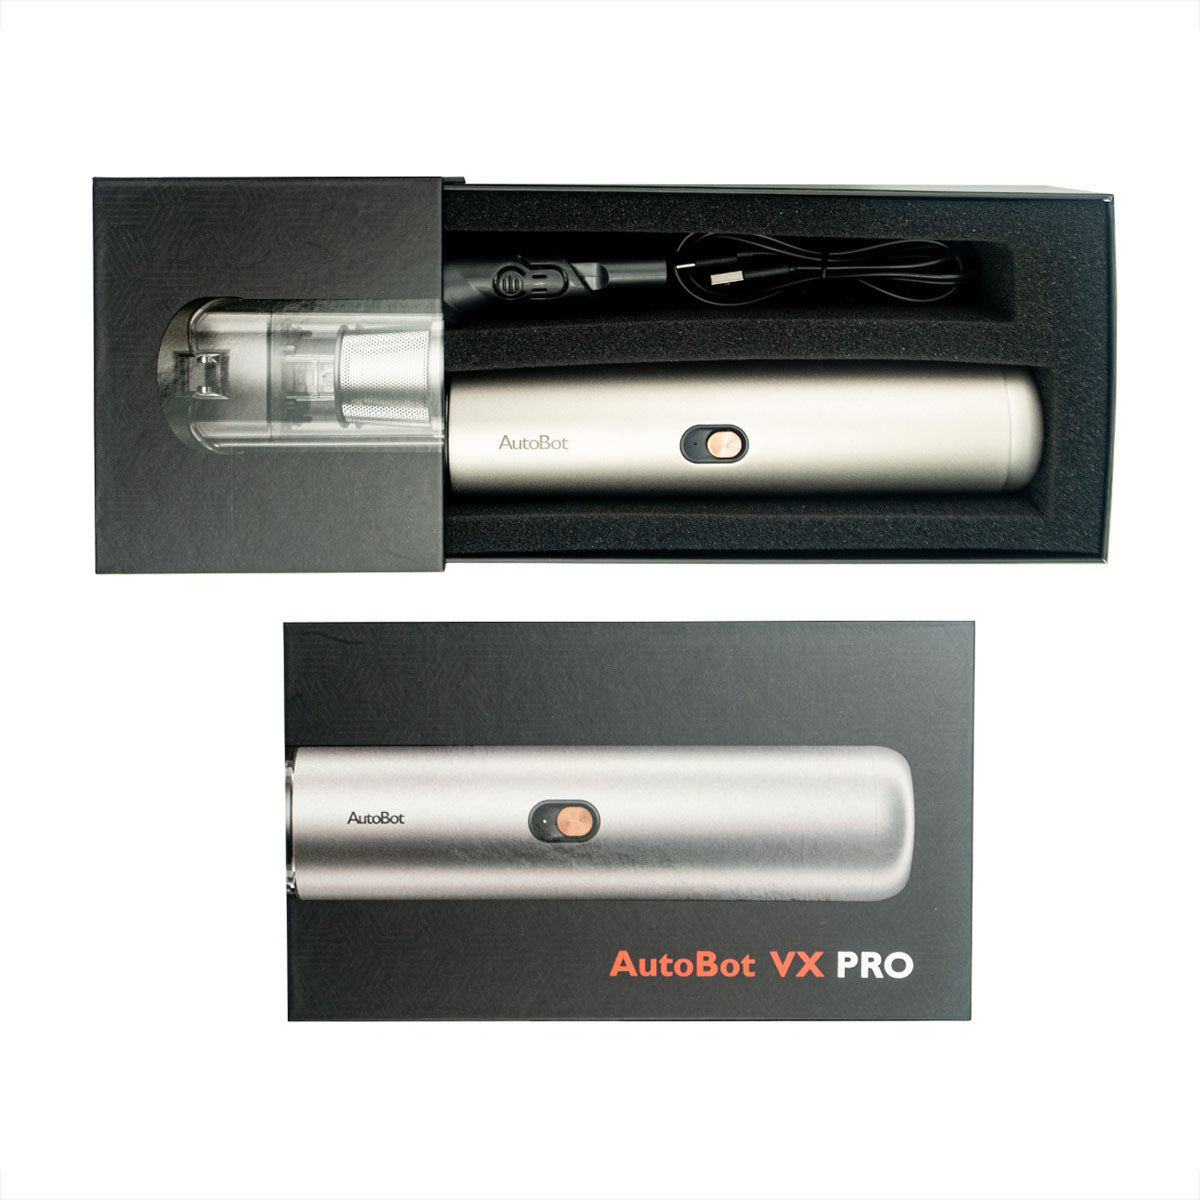 AutoBot VX Pro 無線車家兩用吸塵機